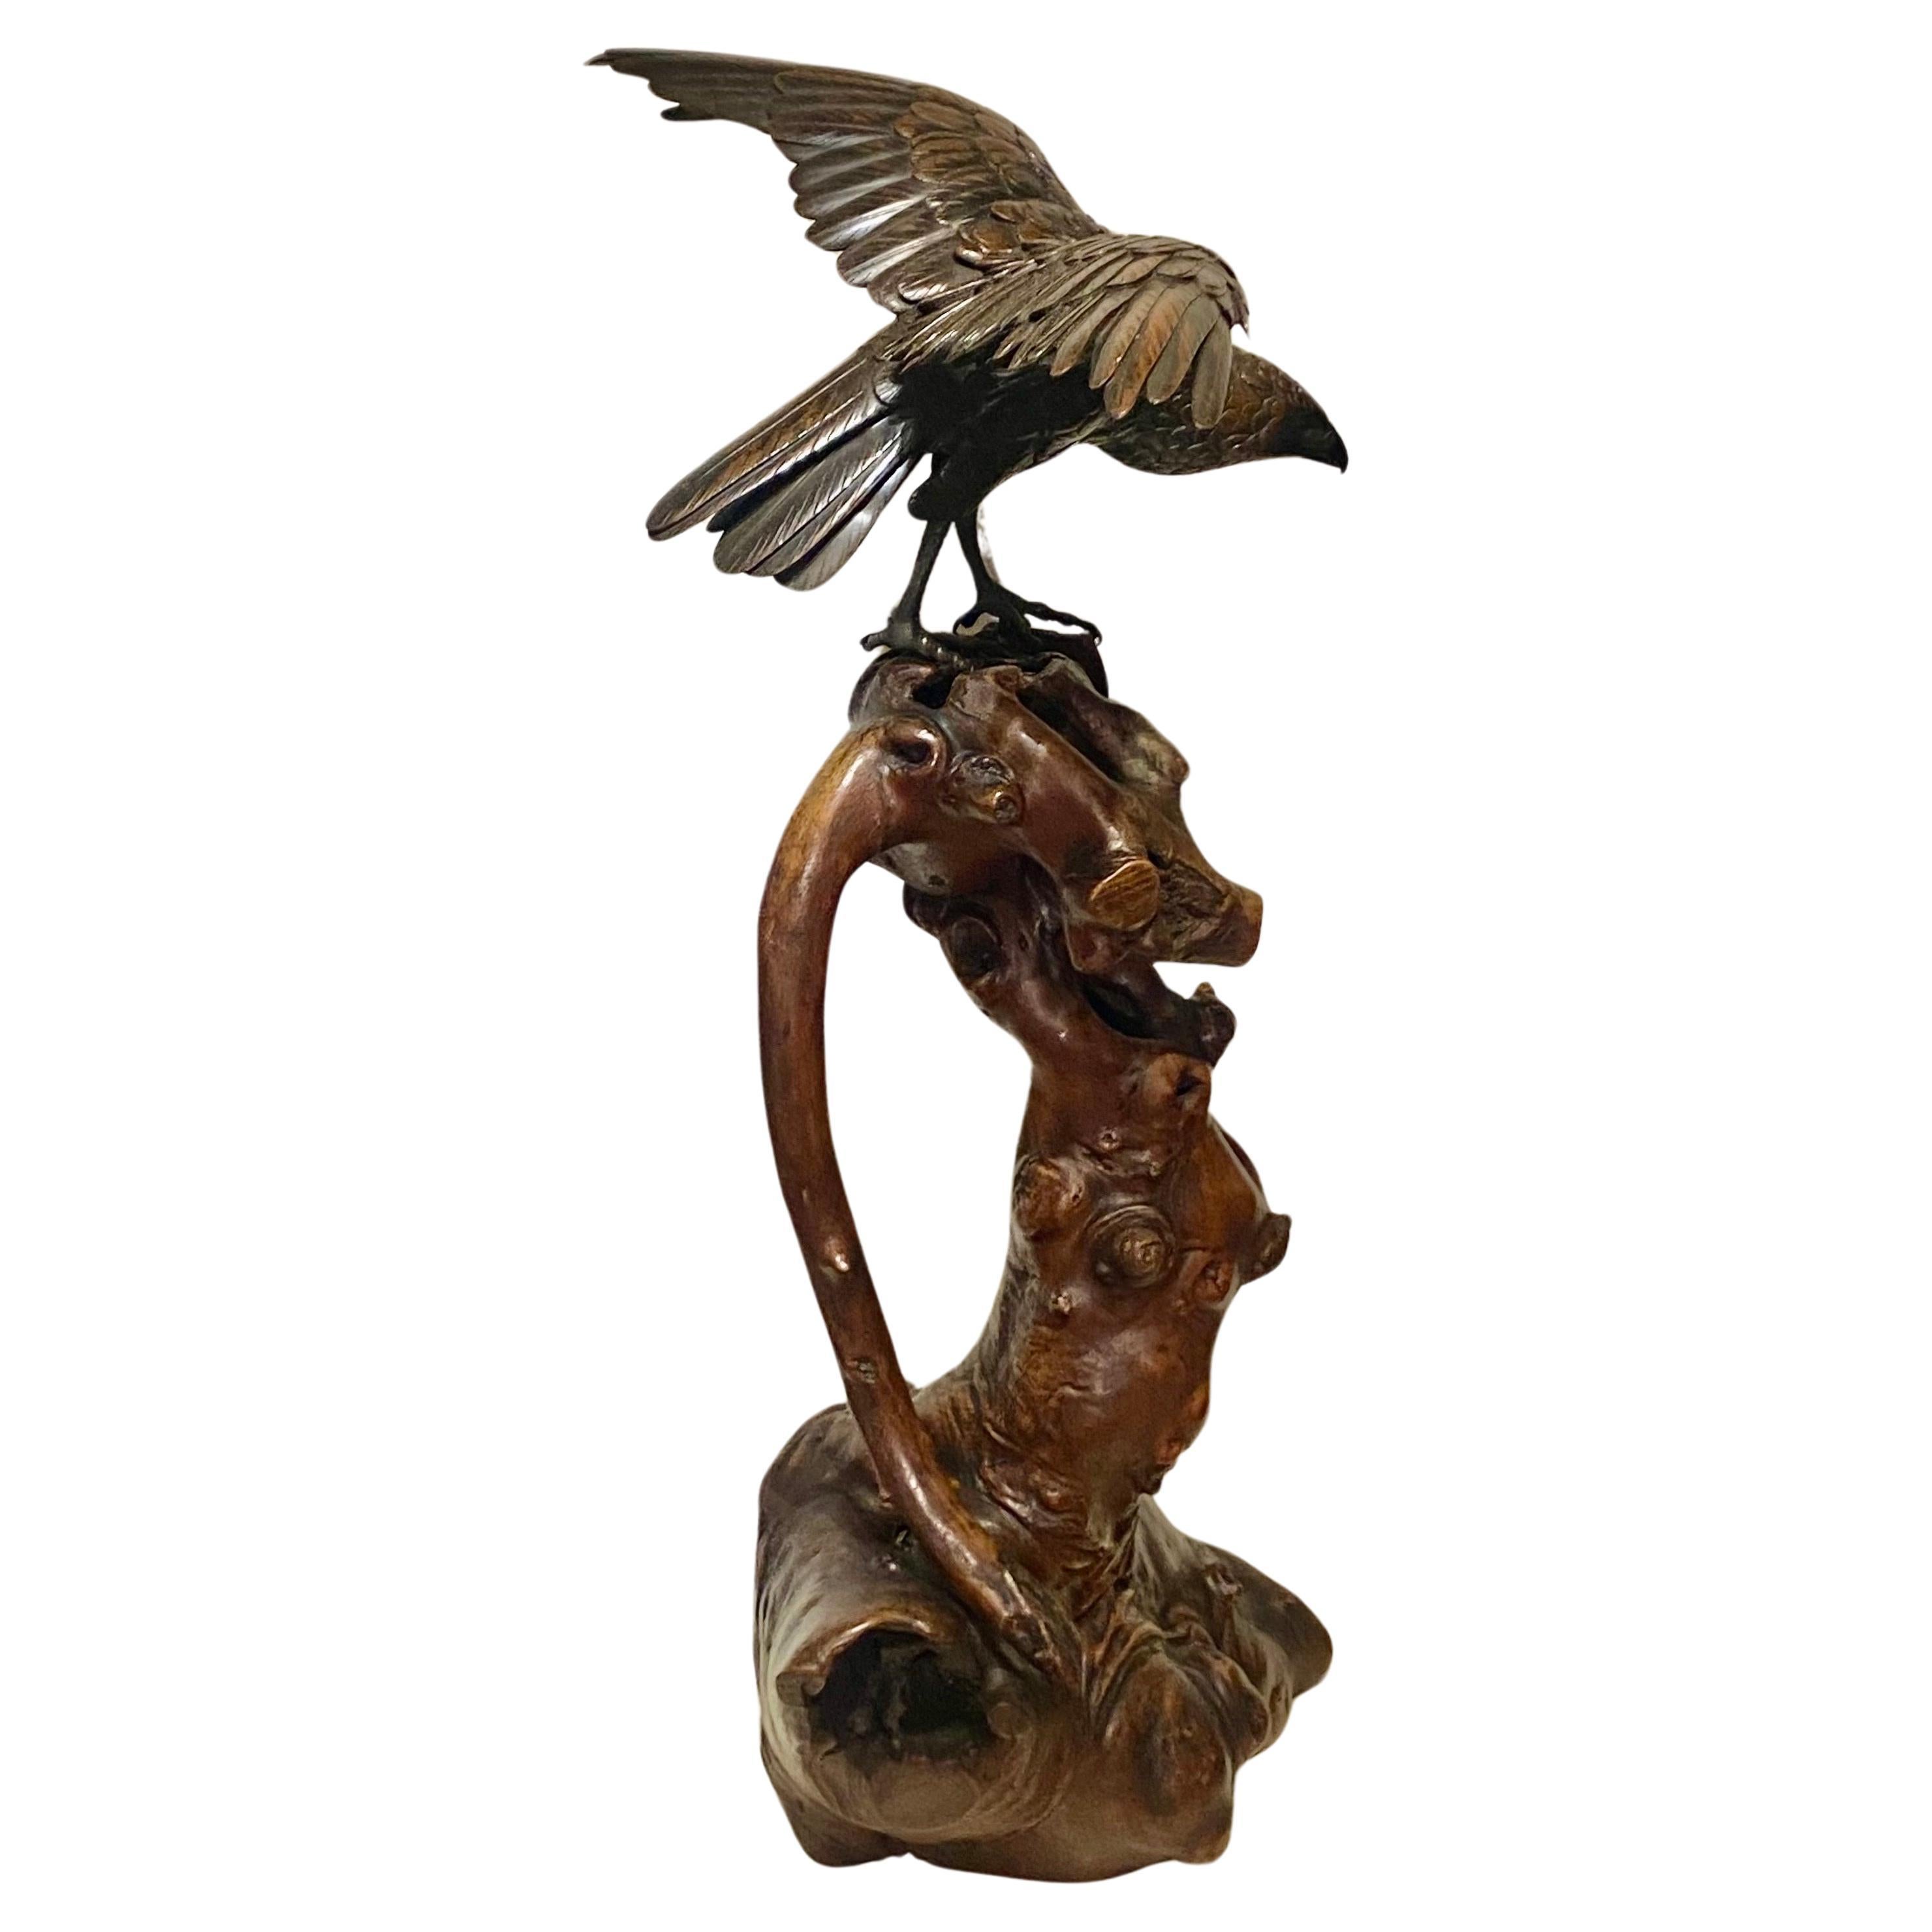 Japanischer Bronzeadler, modelliert mit ausgebreiteten Flügeln und gesenktem Kopf, 
Alle Federn sind fein geschnitzt und haben eine reiche braune Patina. Sie stehen auf einem Sockel aus Wurzelholz und sind auf einer rechteckigen Reserveplakette